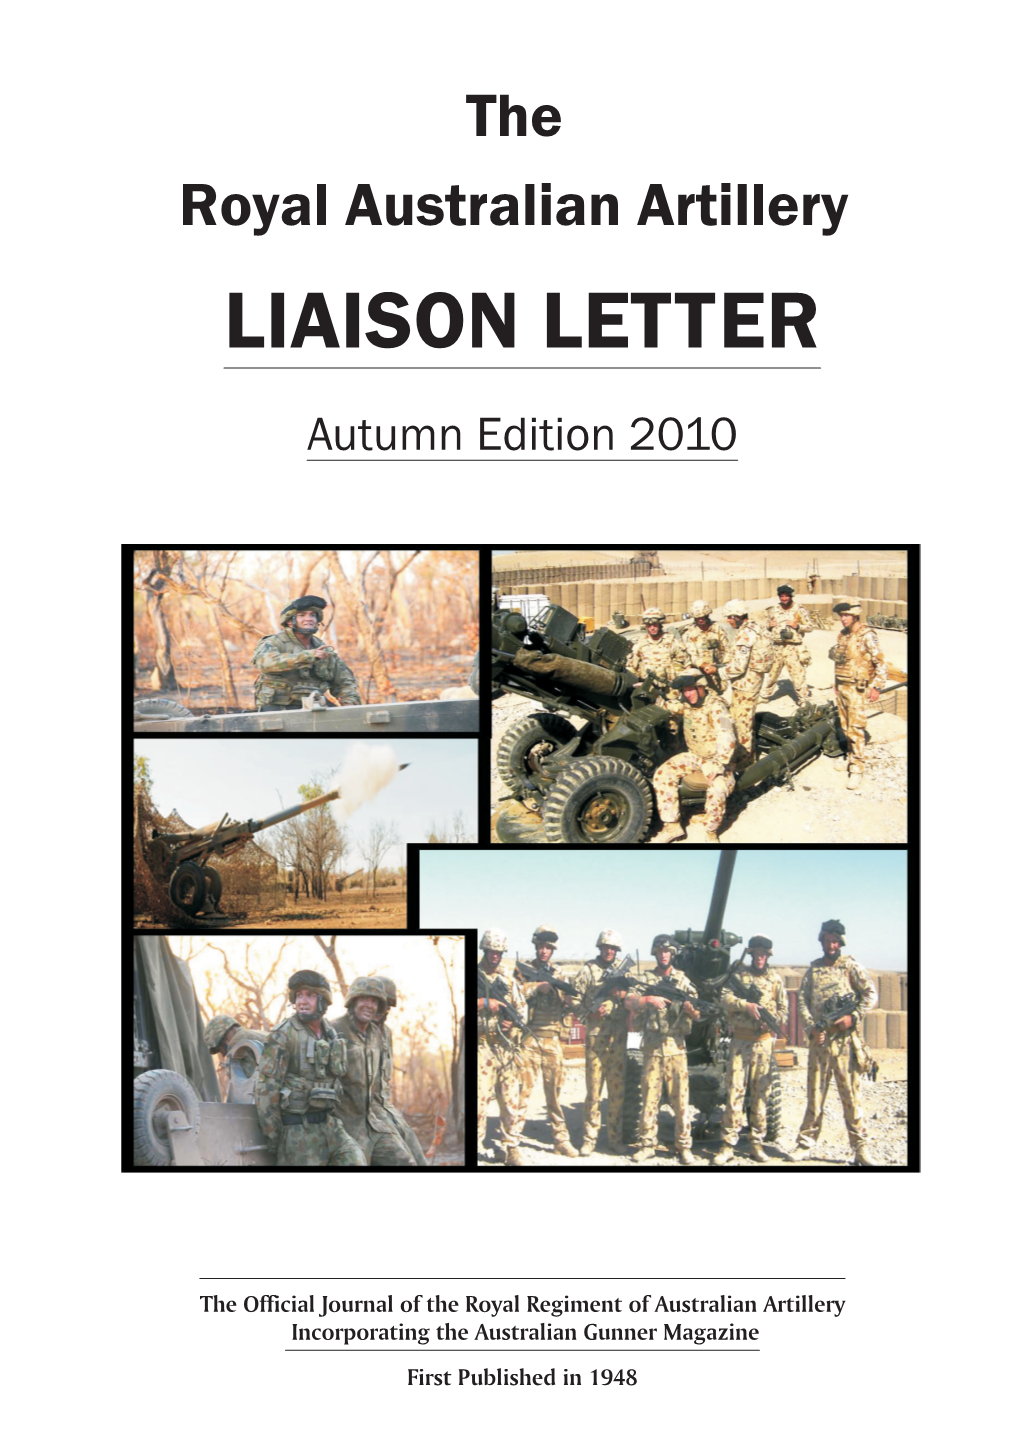 Liaison Letter